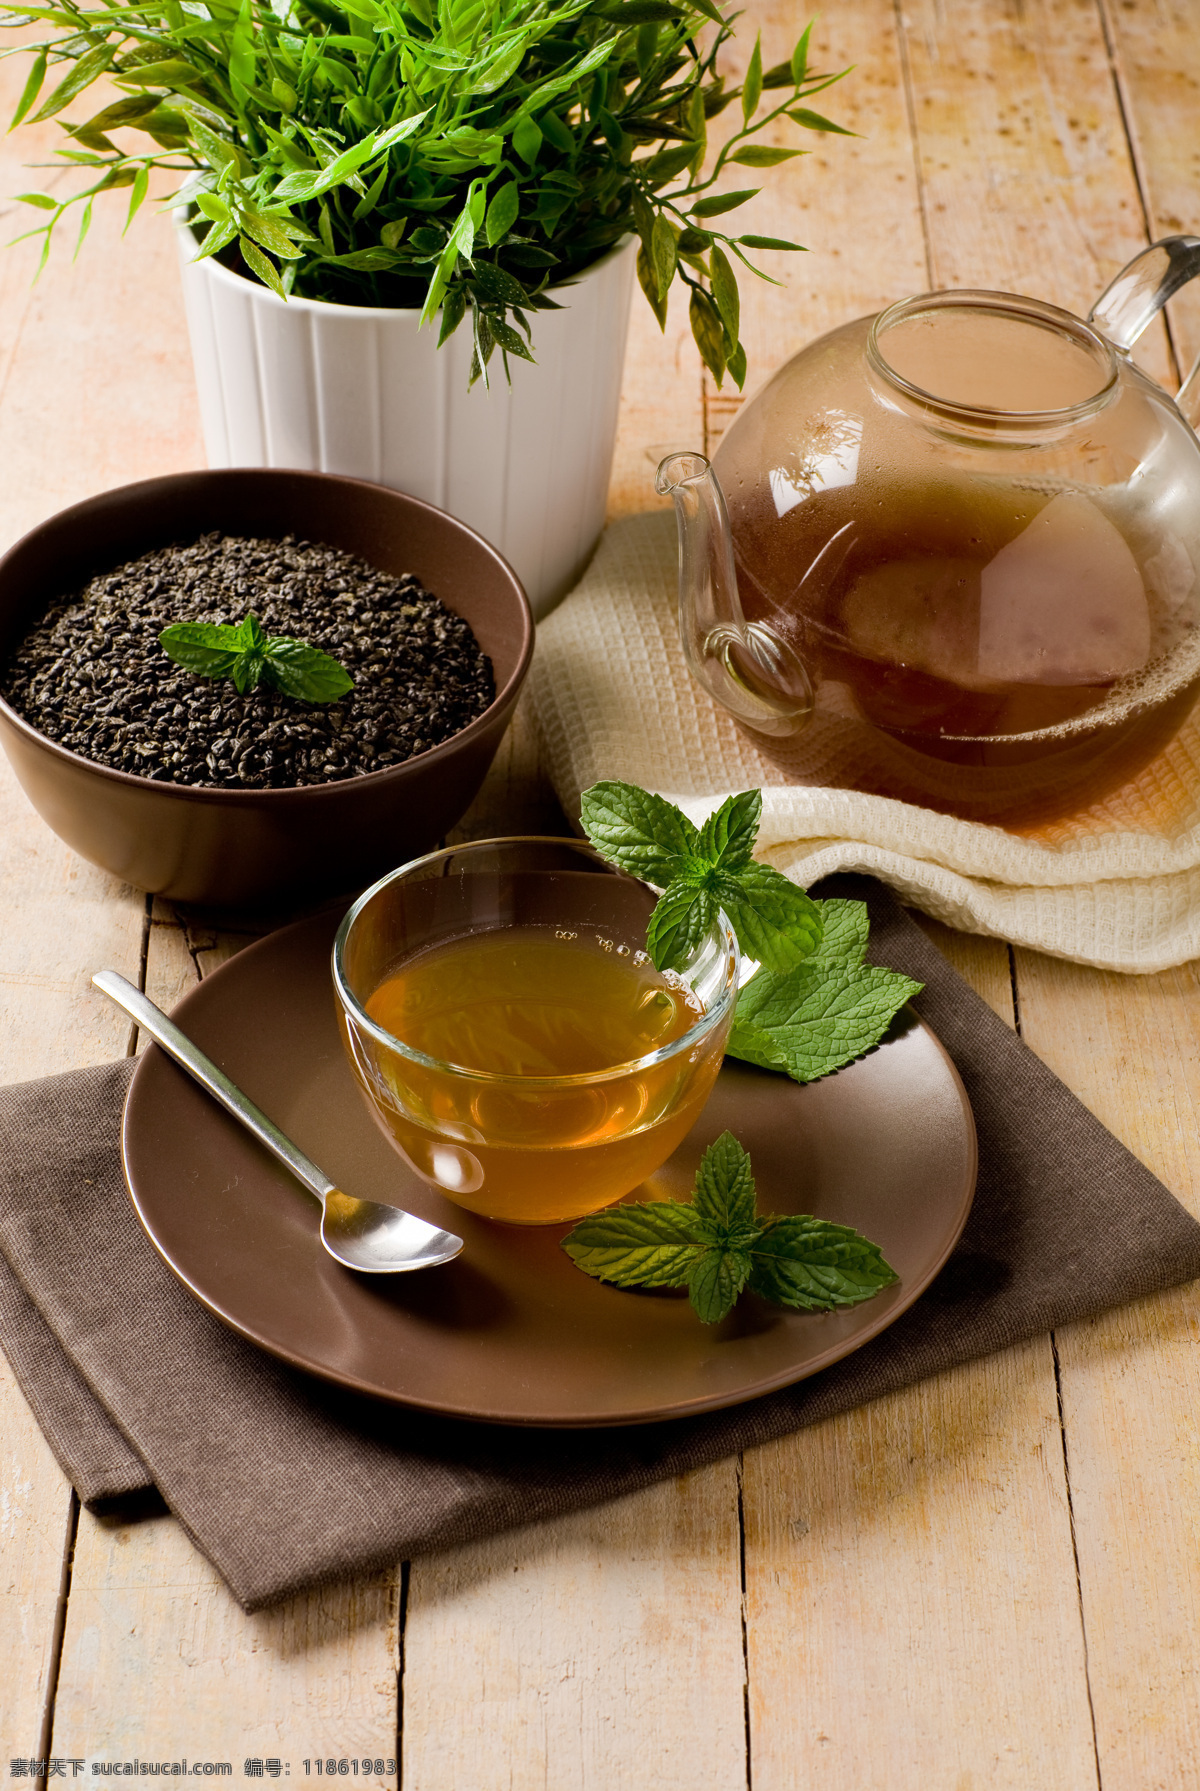 玻璃杯 餐饮美食 茶 茶杯 茶壶 茶水 红茶 花茶 绿茶 绿叶 咖啡豆 养生茶 饮料酒水 psd源文件 餐饮素材